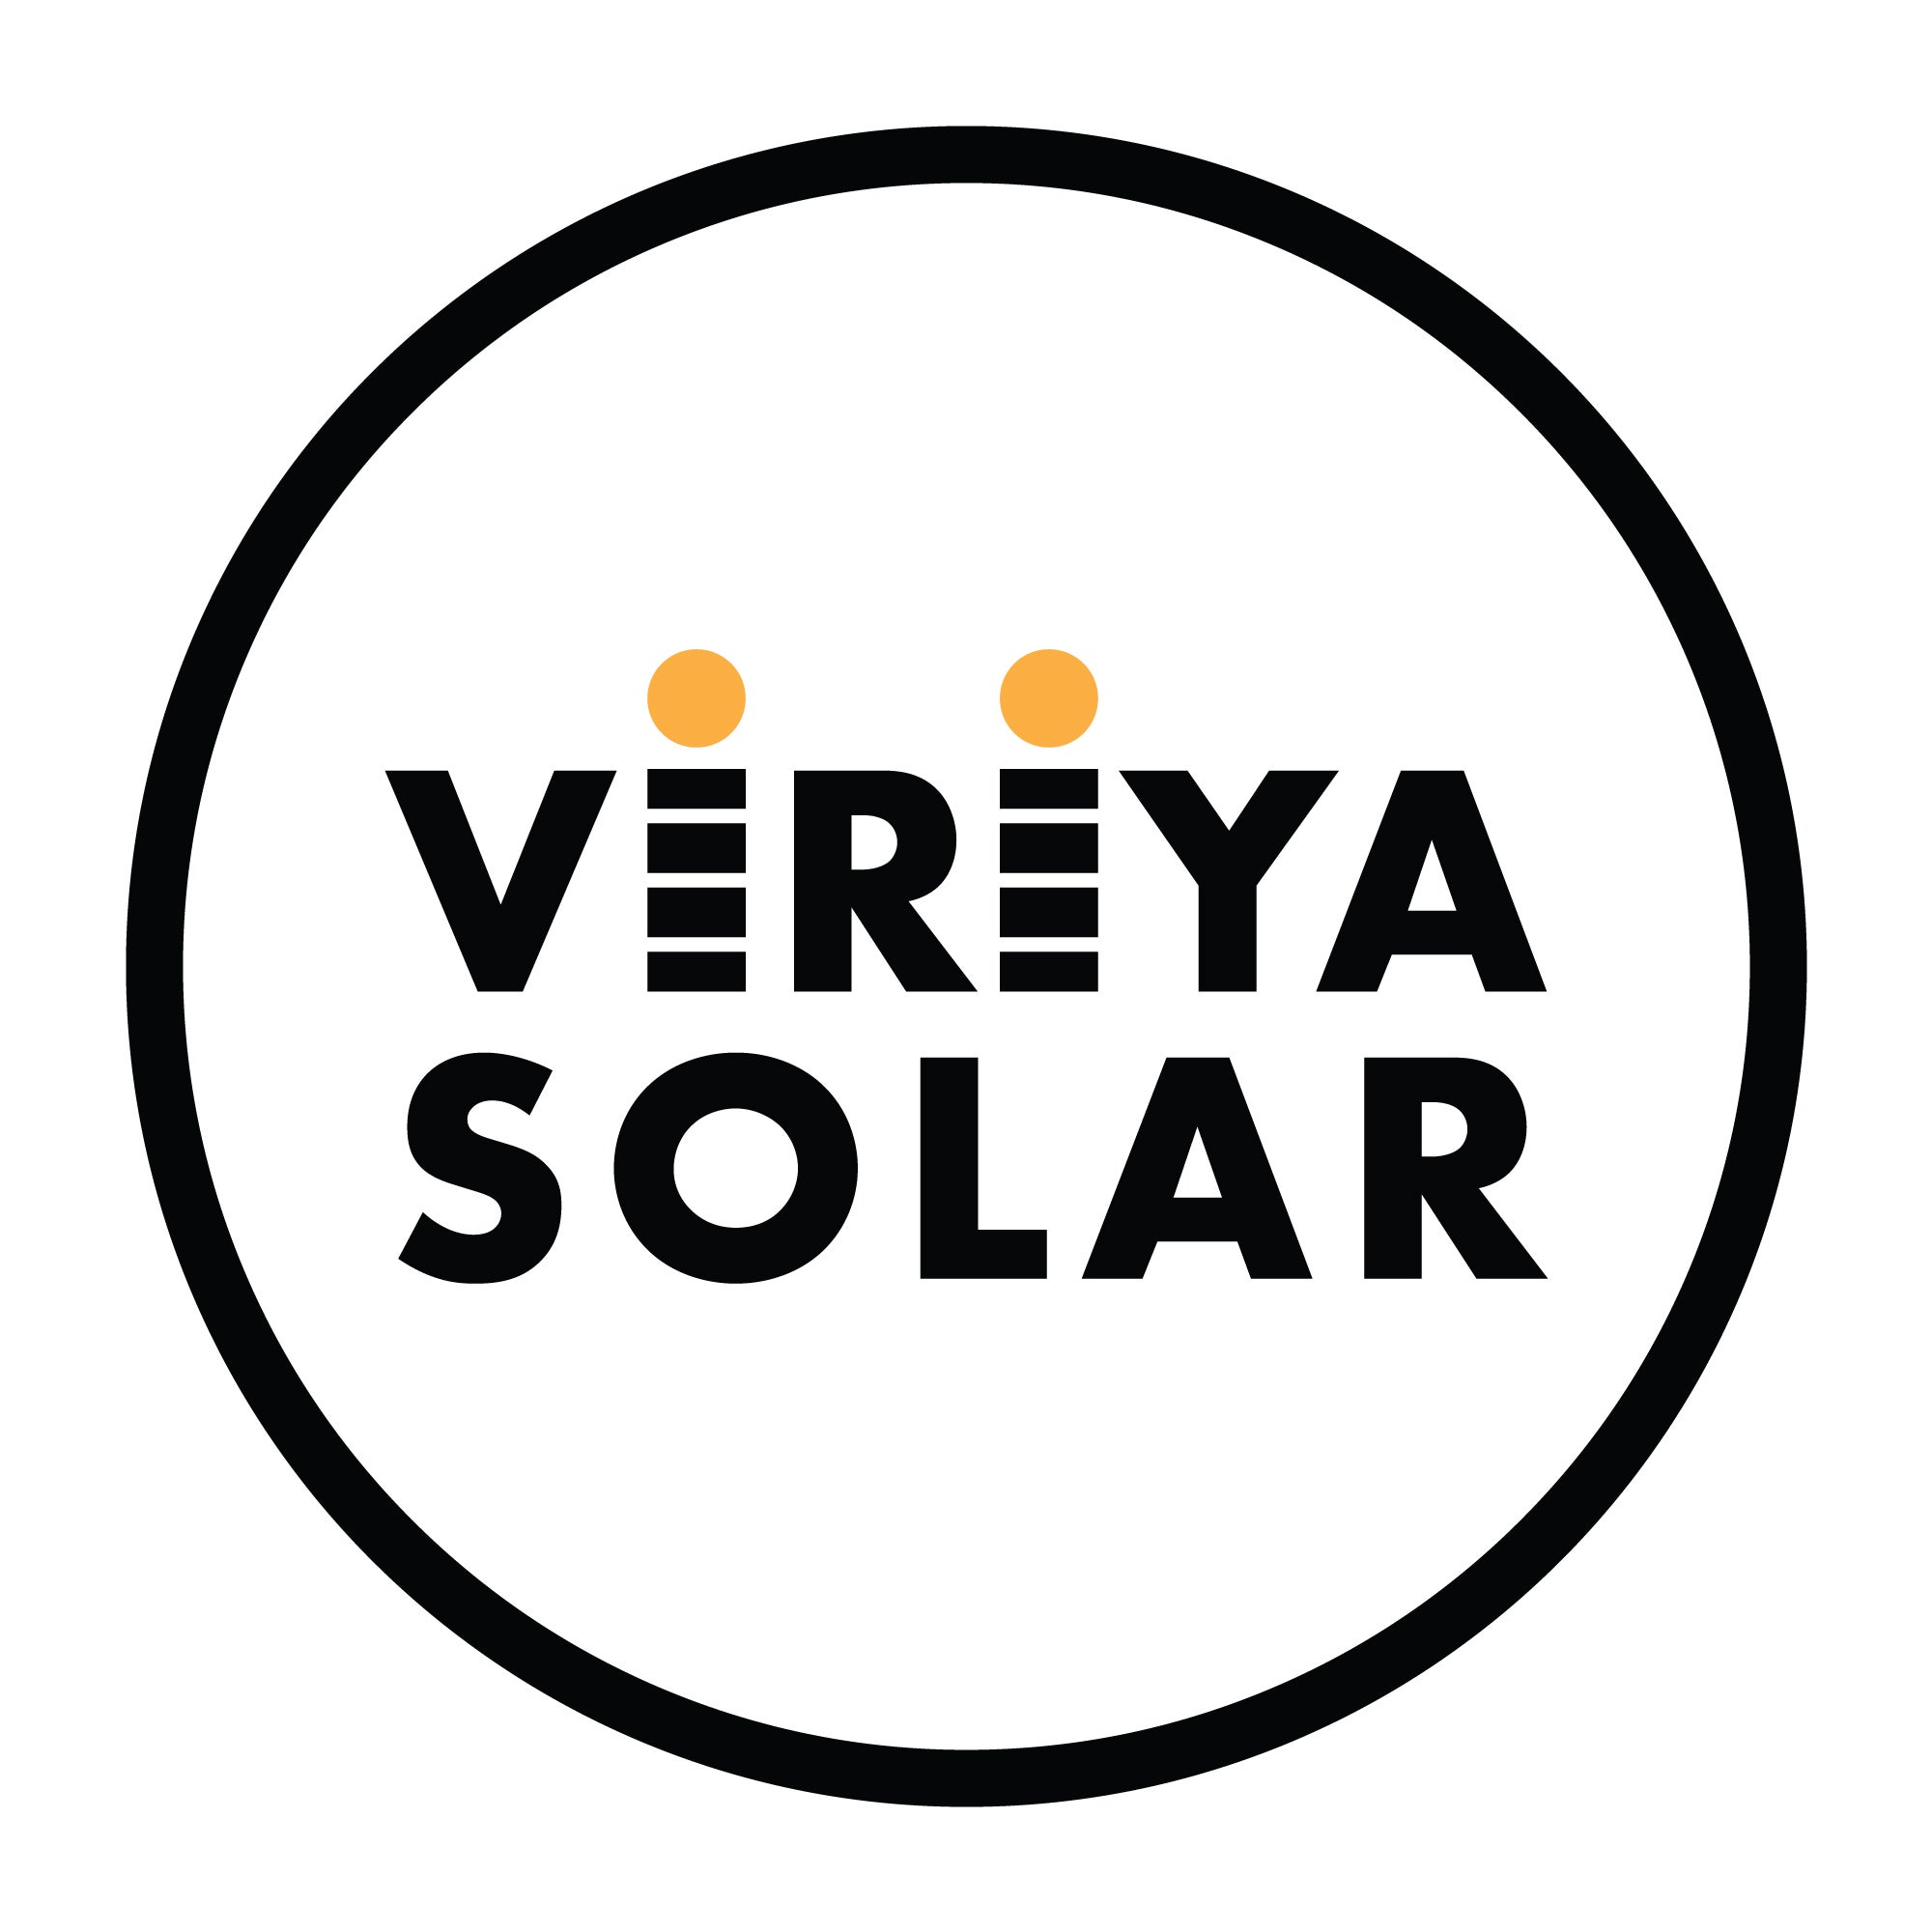 Viriya Solar